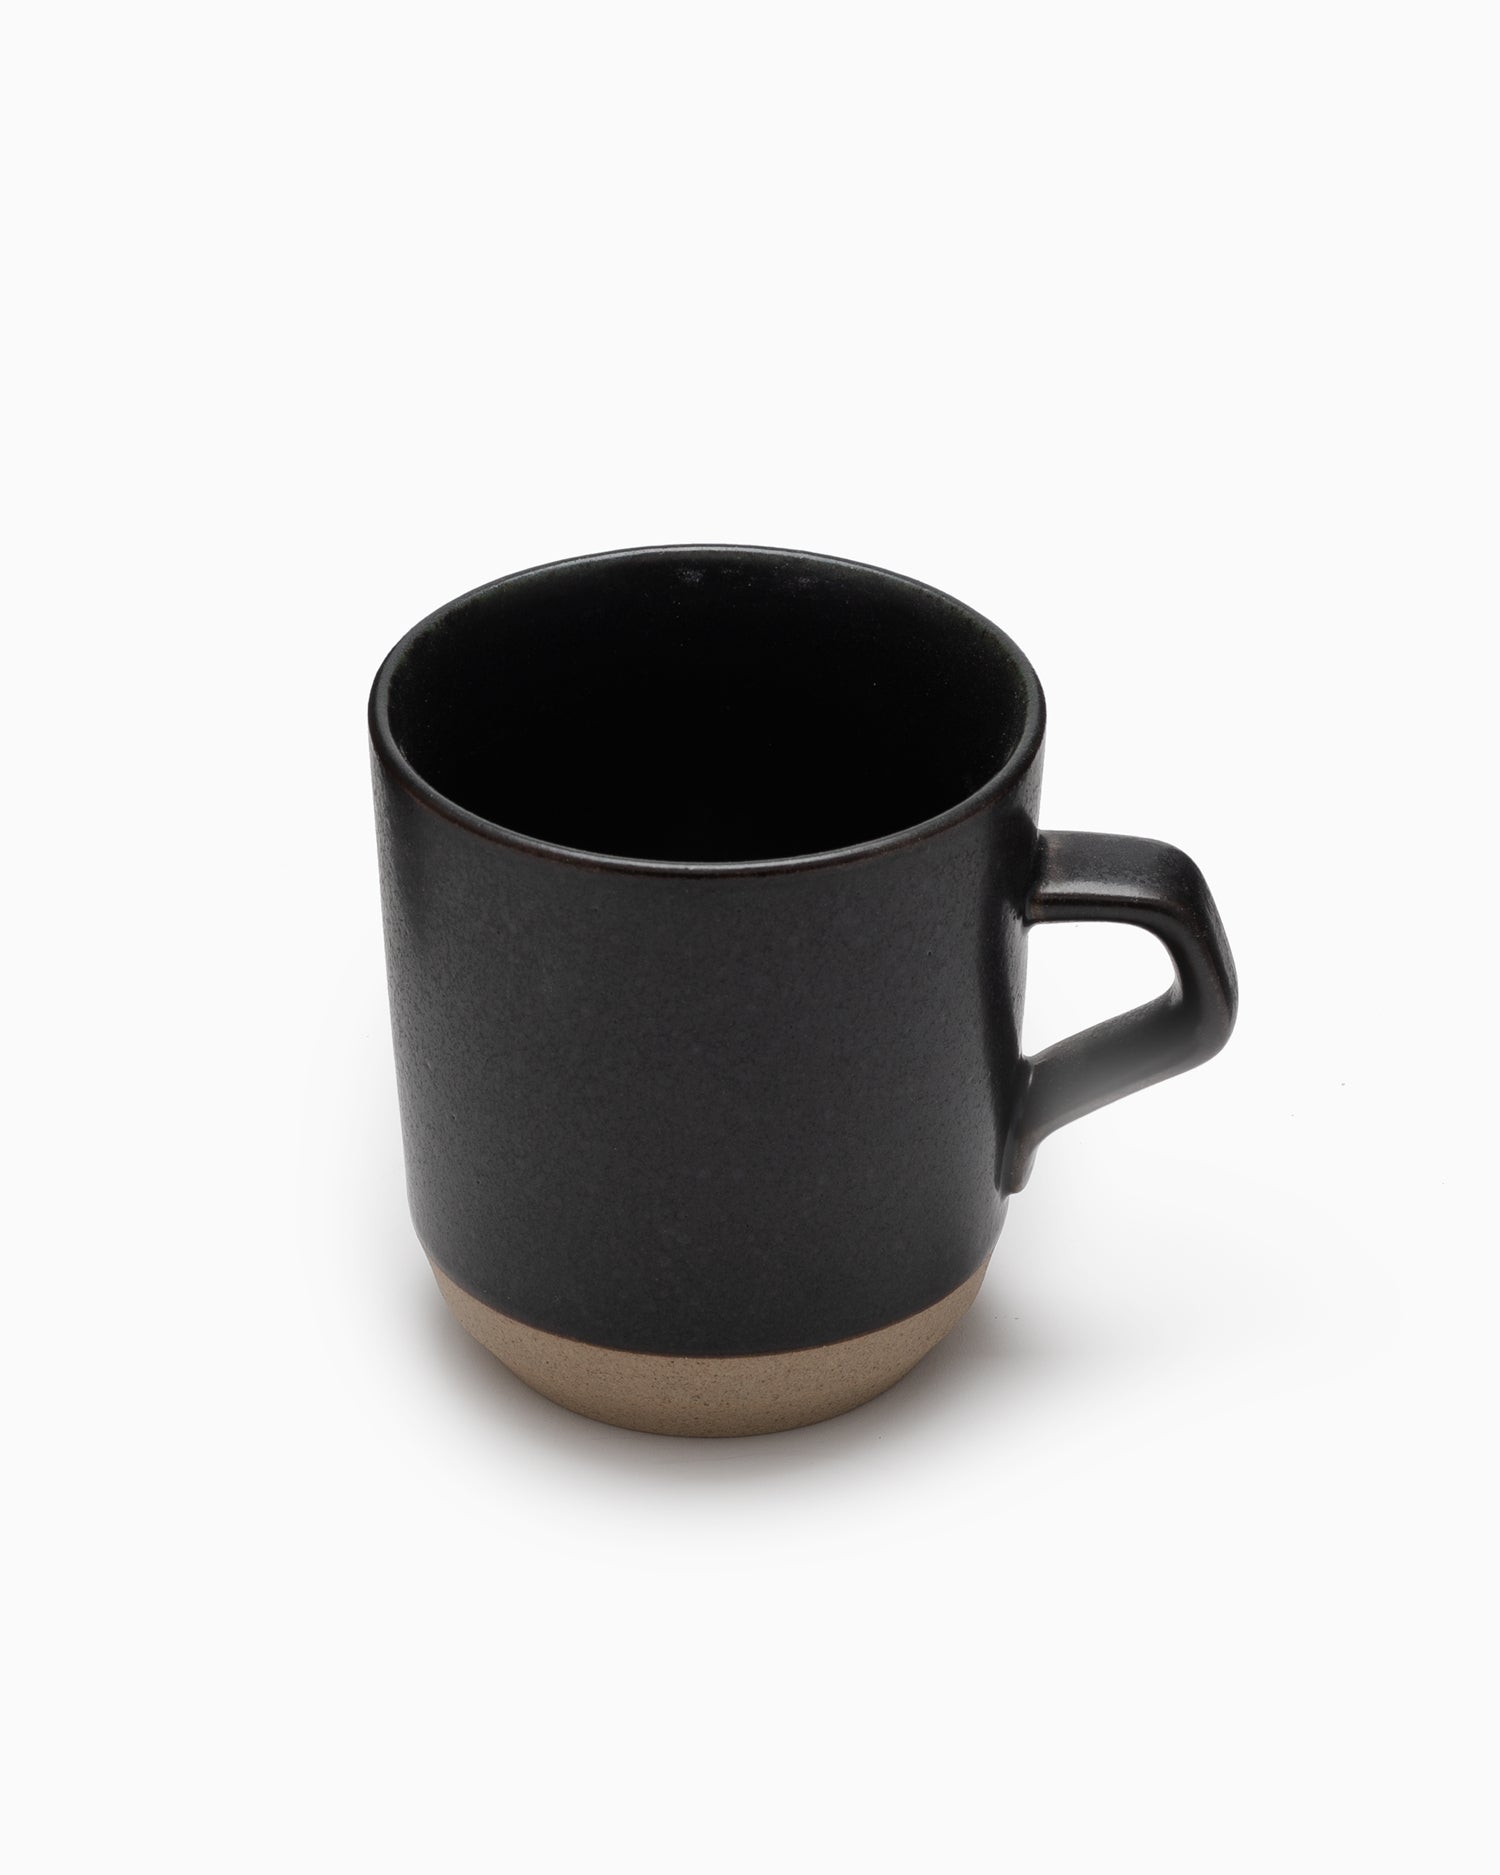 CLK-151 tall mug 360ml / 12oz – KINTO USA, Inc